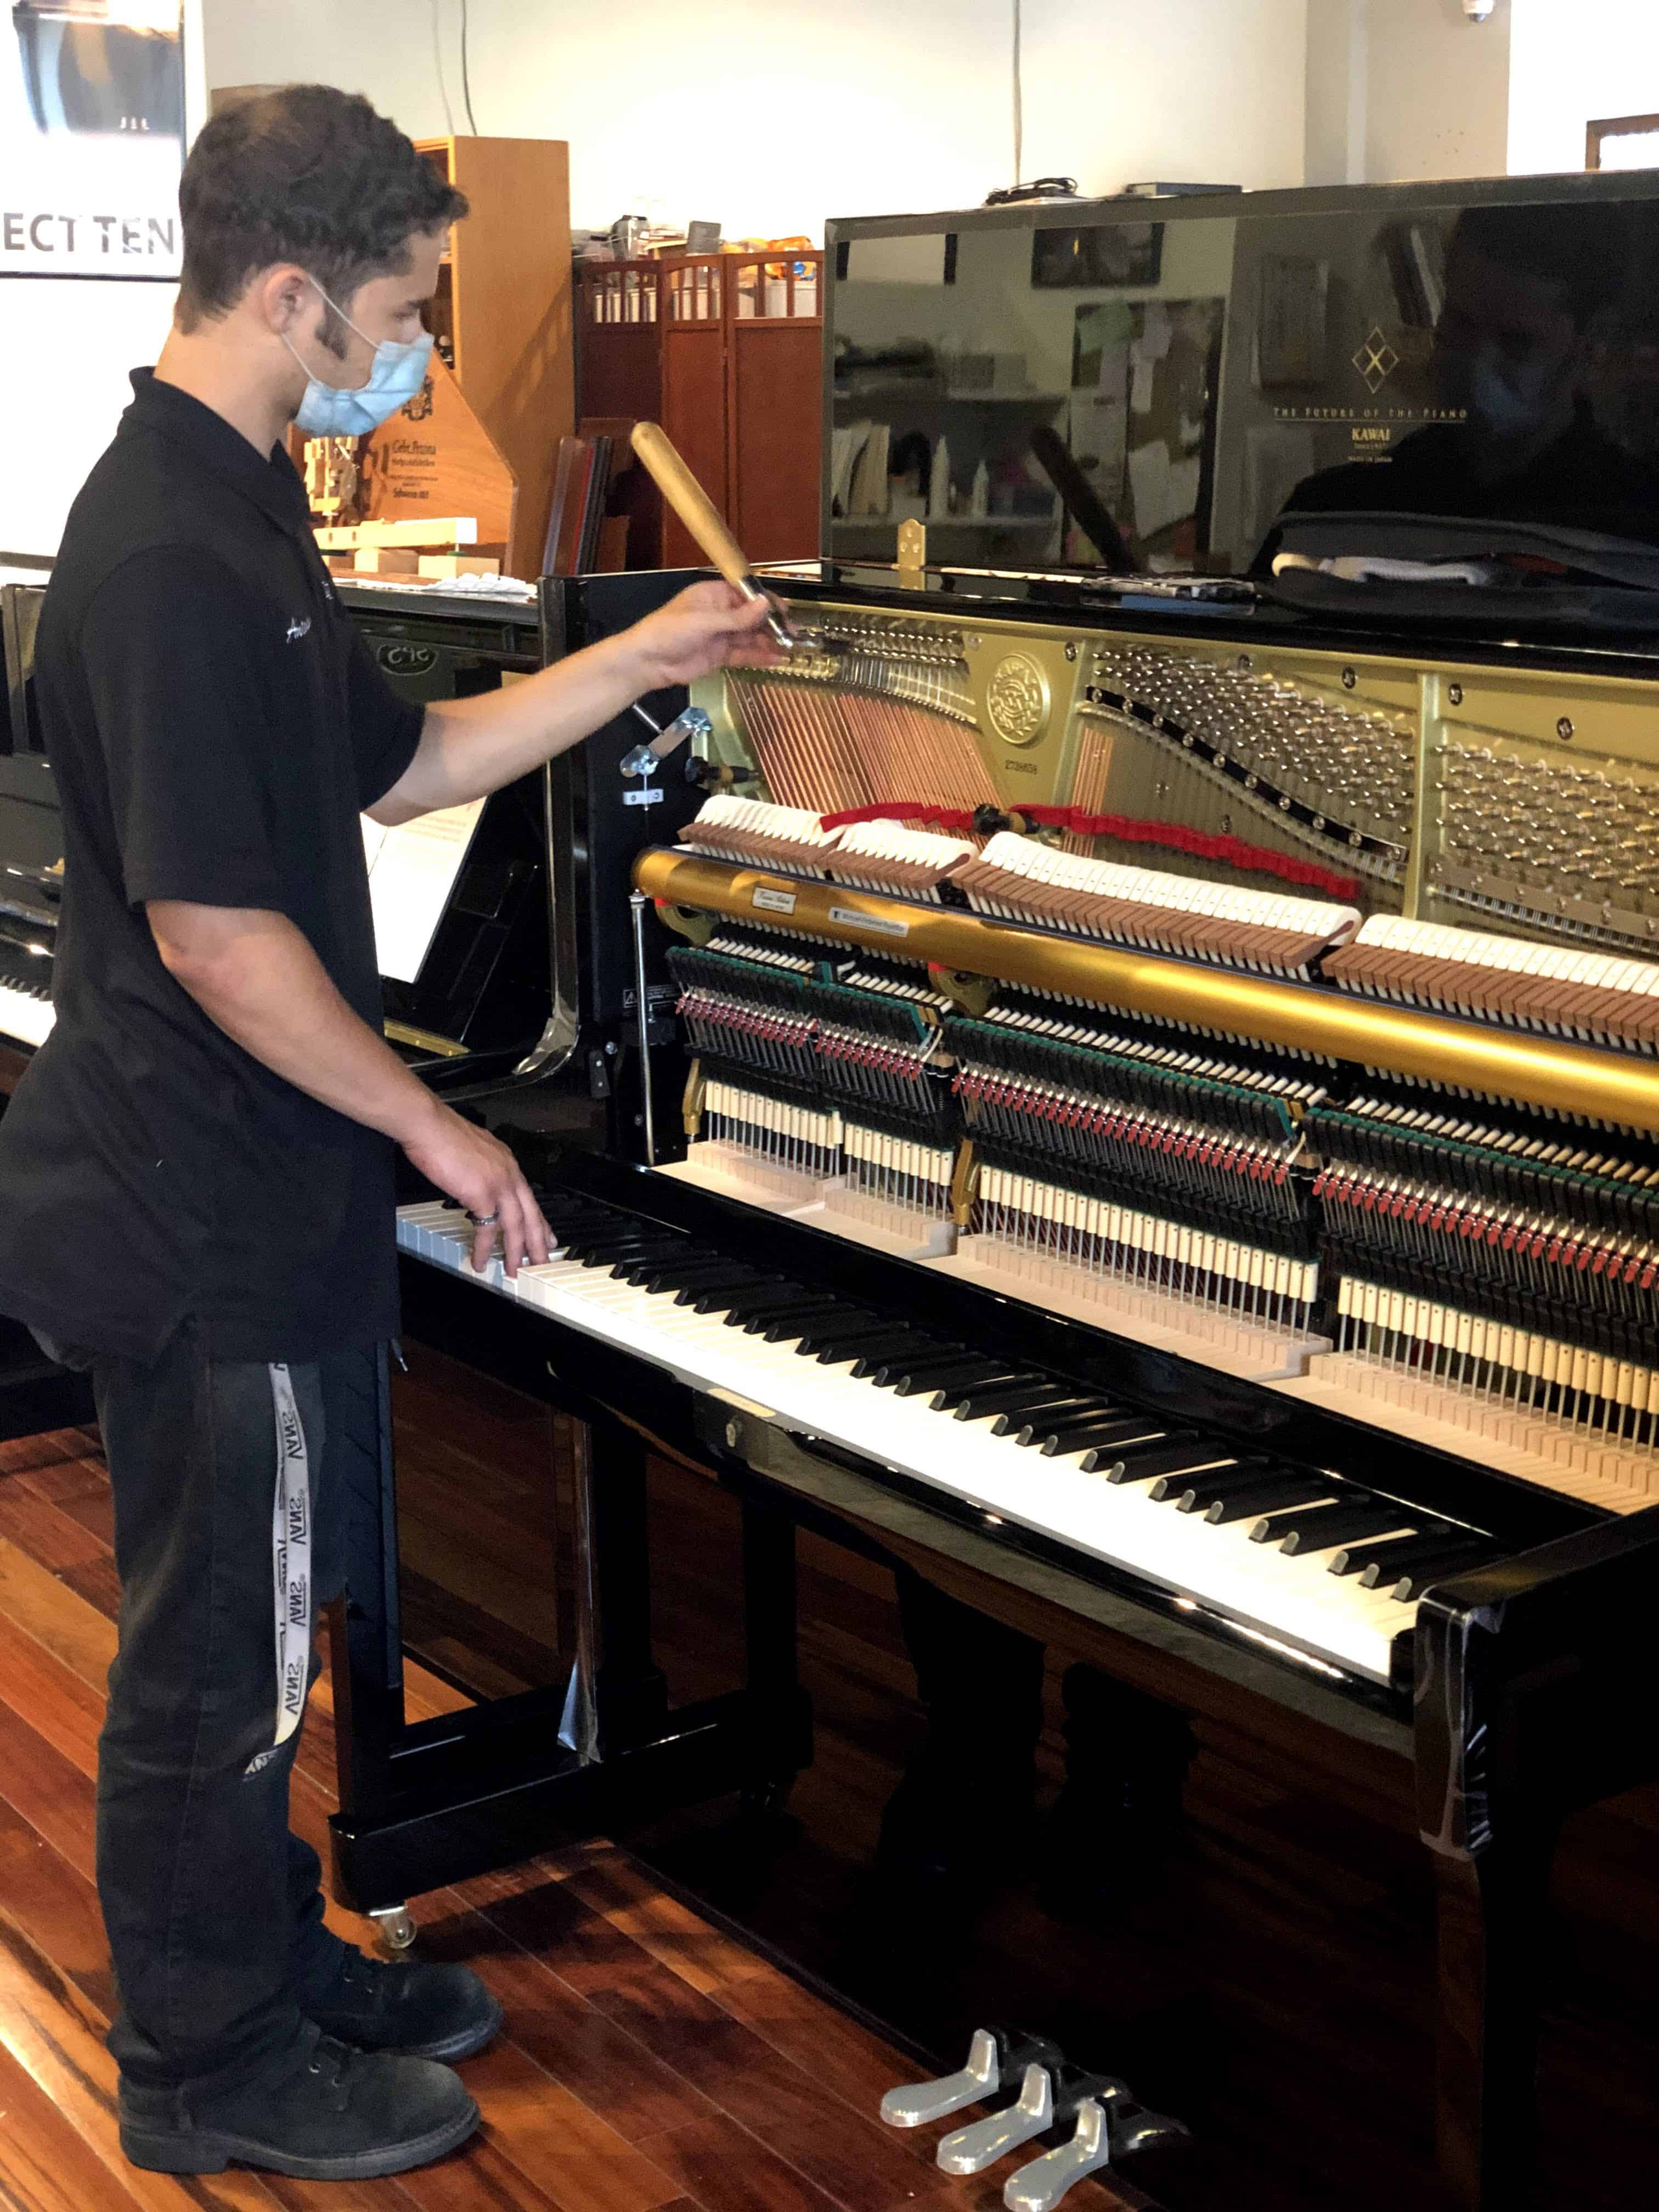 Antionio, a piano technician, tuning a Kawai piano.